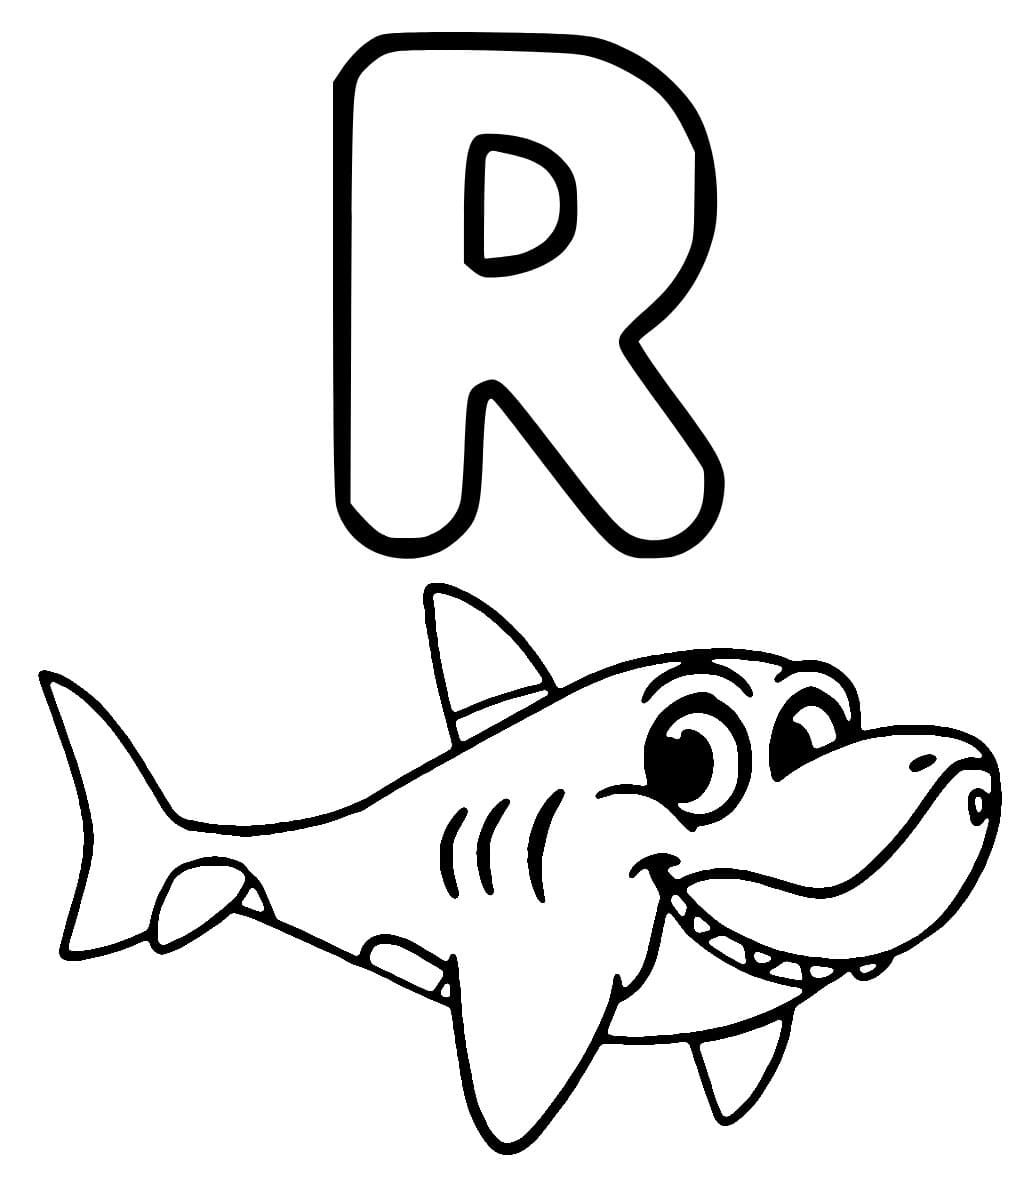 Coloriage Lettre R est Pour Requin